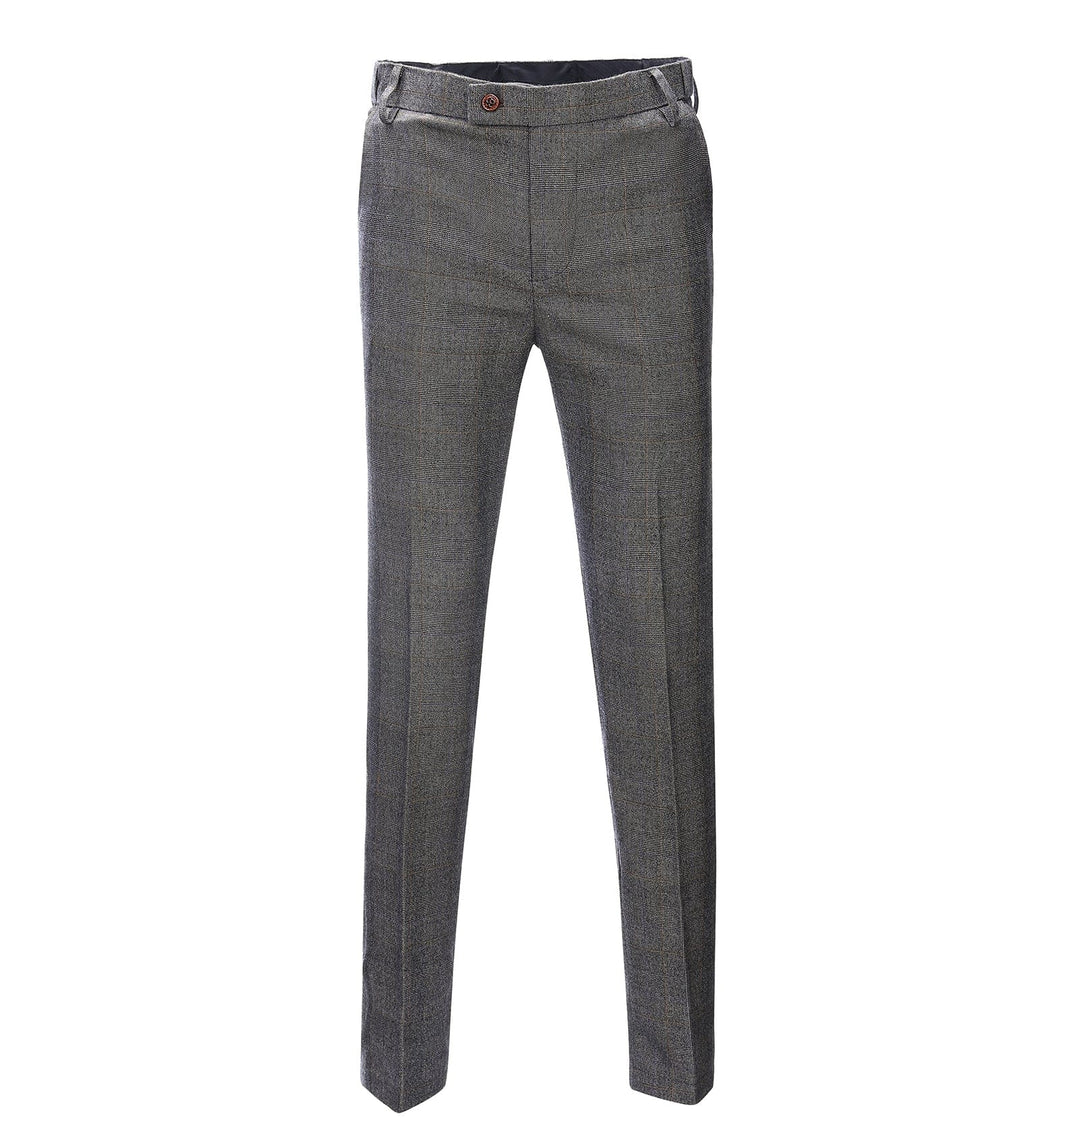 Casual Men's Suit Pant Grey Plaid Pleat-Front Trousers menseventwear